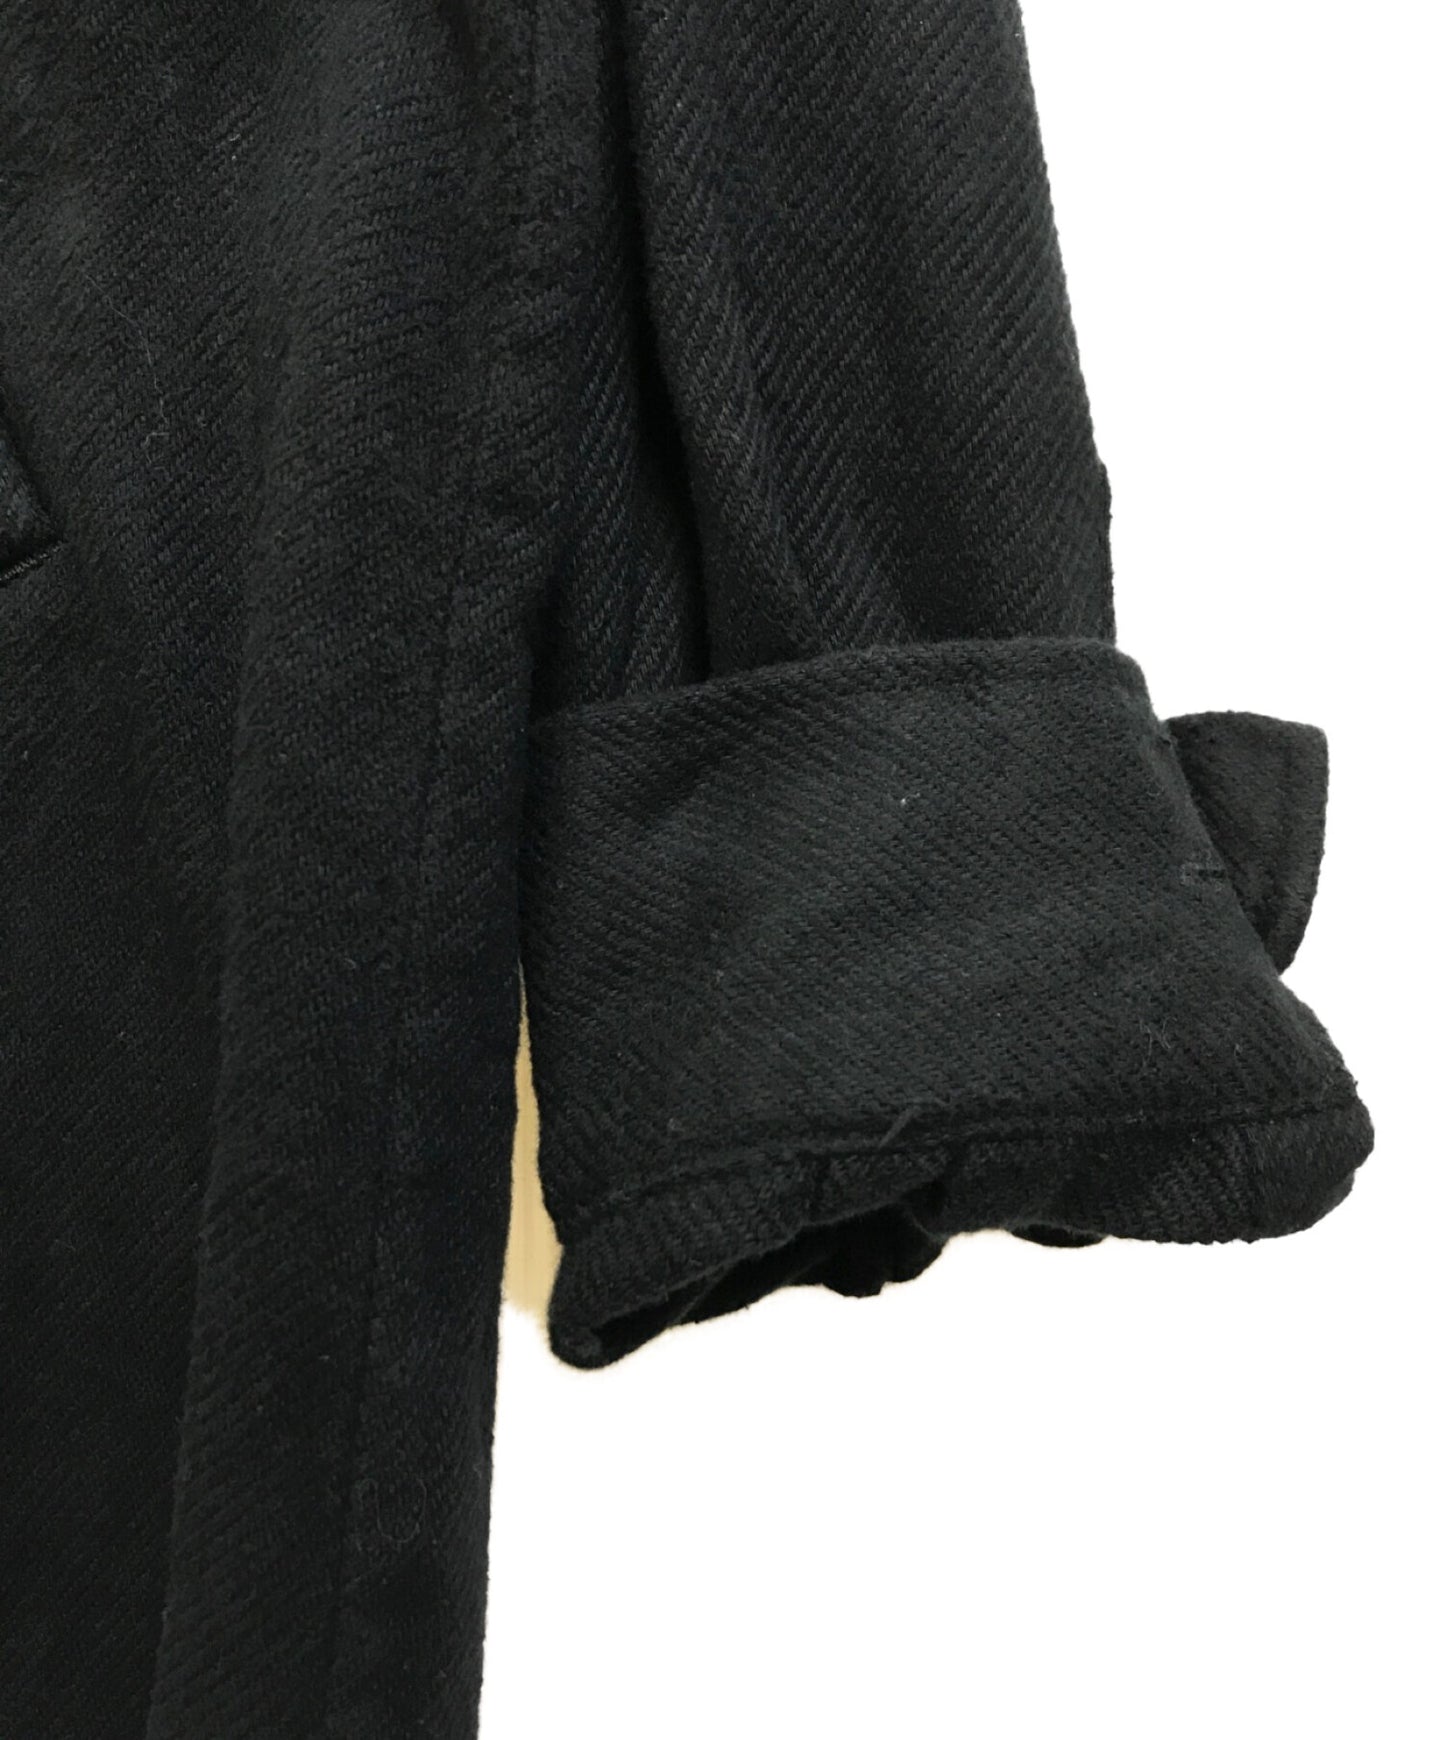 เสื้อเชิ้ต Flannel Cutoff (เสื้อกีฬาแขนยาว) UC2B4406-2 (เสื้อเชิ้ตแขนยาว)